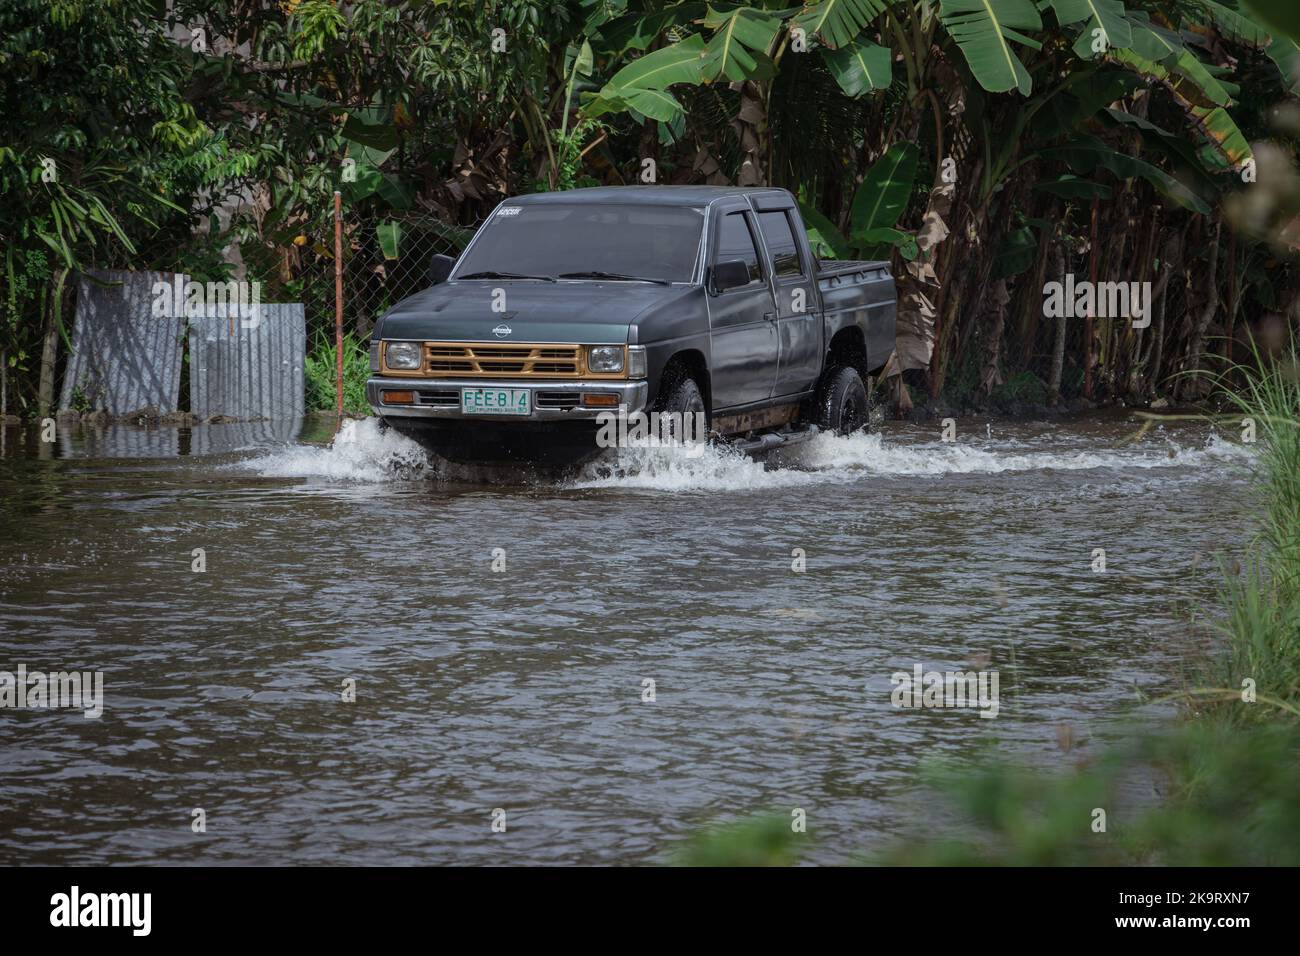 La tempête tropicale grave Paeng ou Nalgae a apporté des inondations et des pluies torrentielles au pays. Camionnette sur route inondée. Banque D'Images